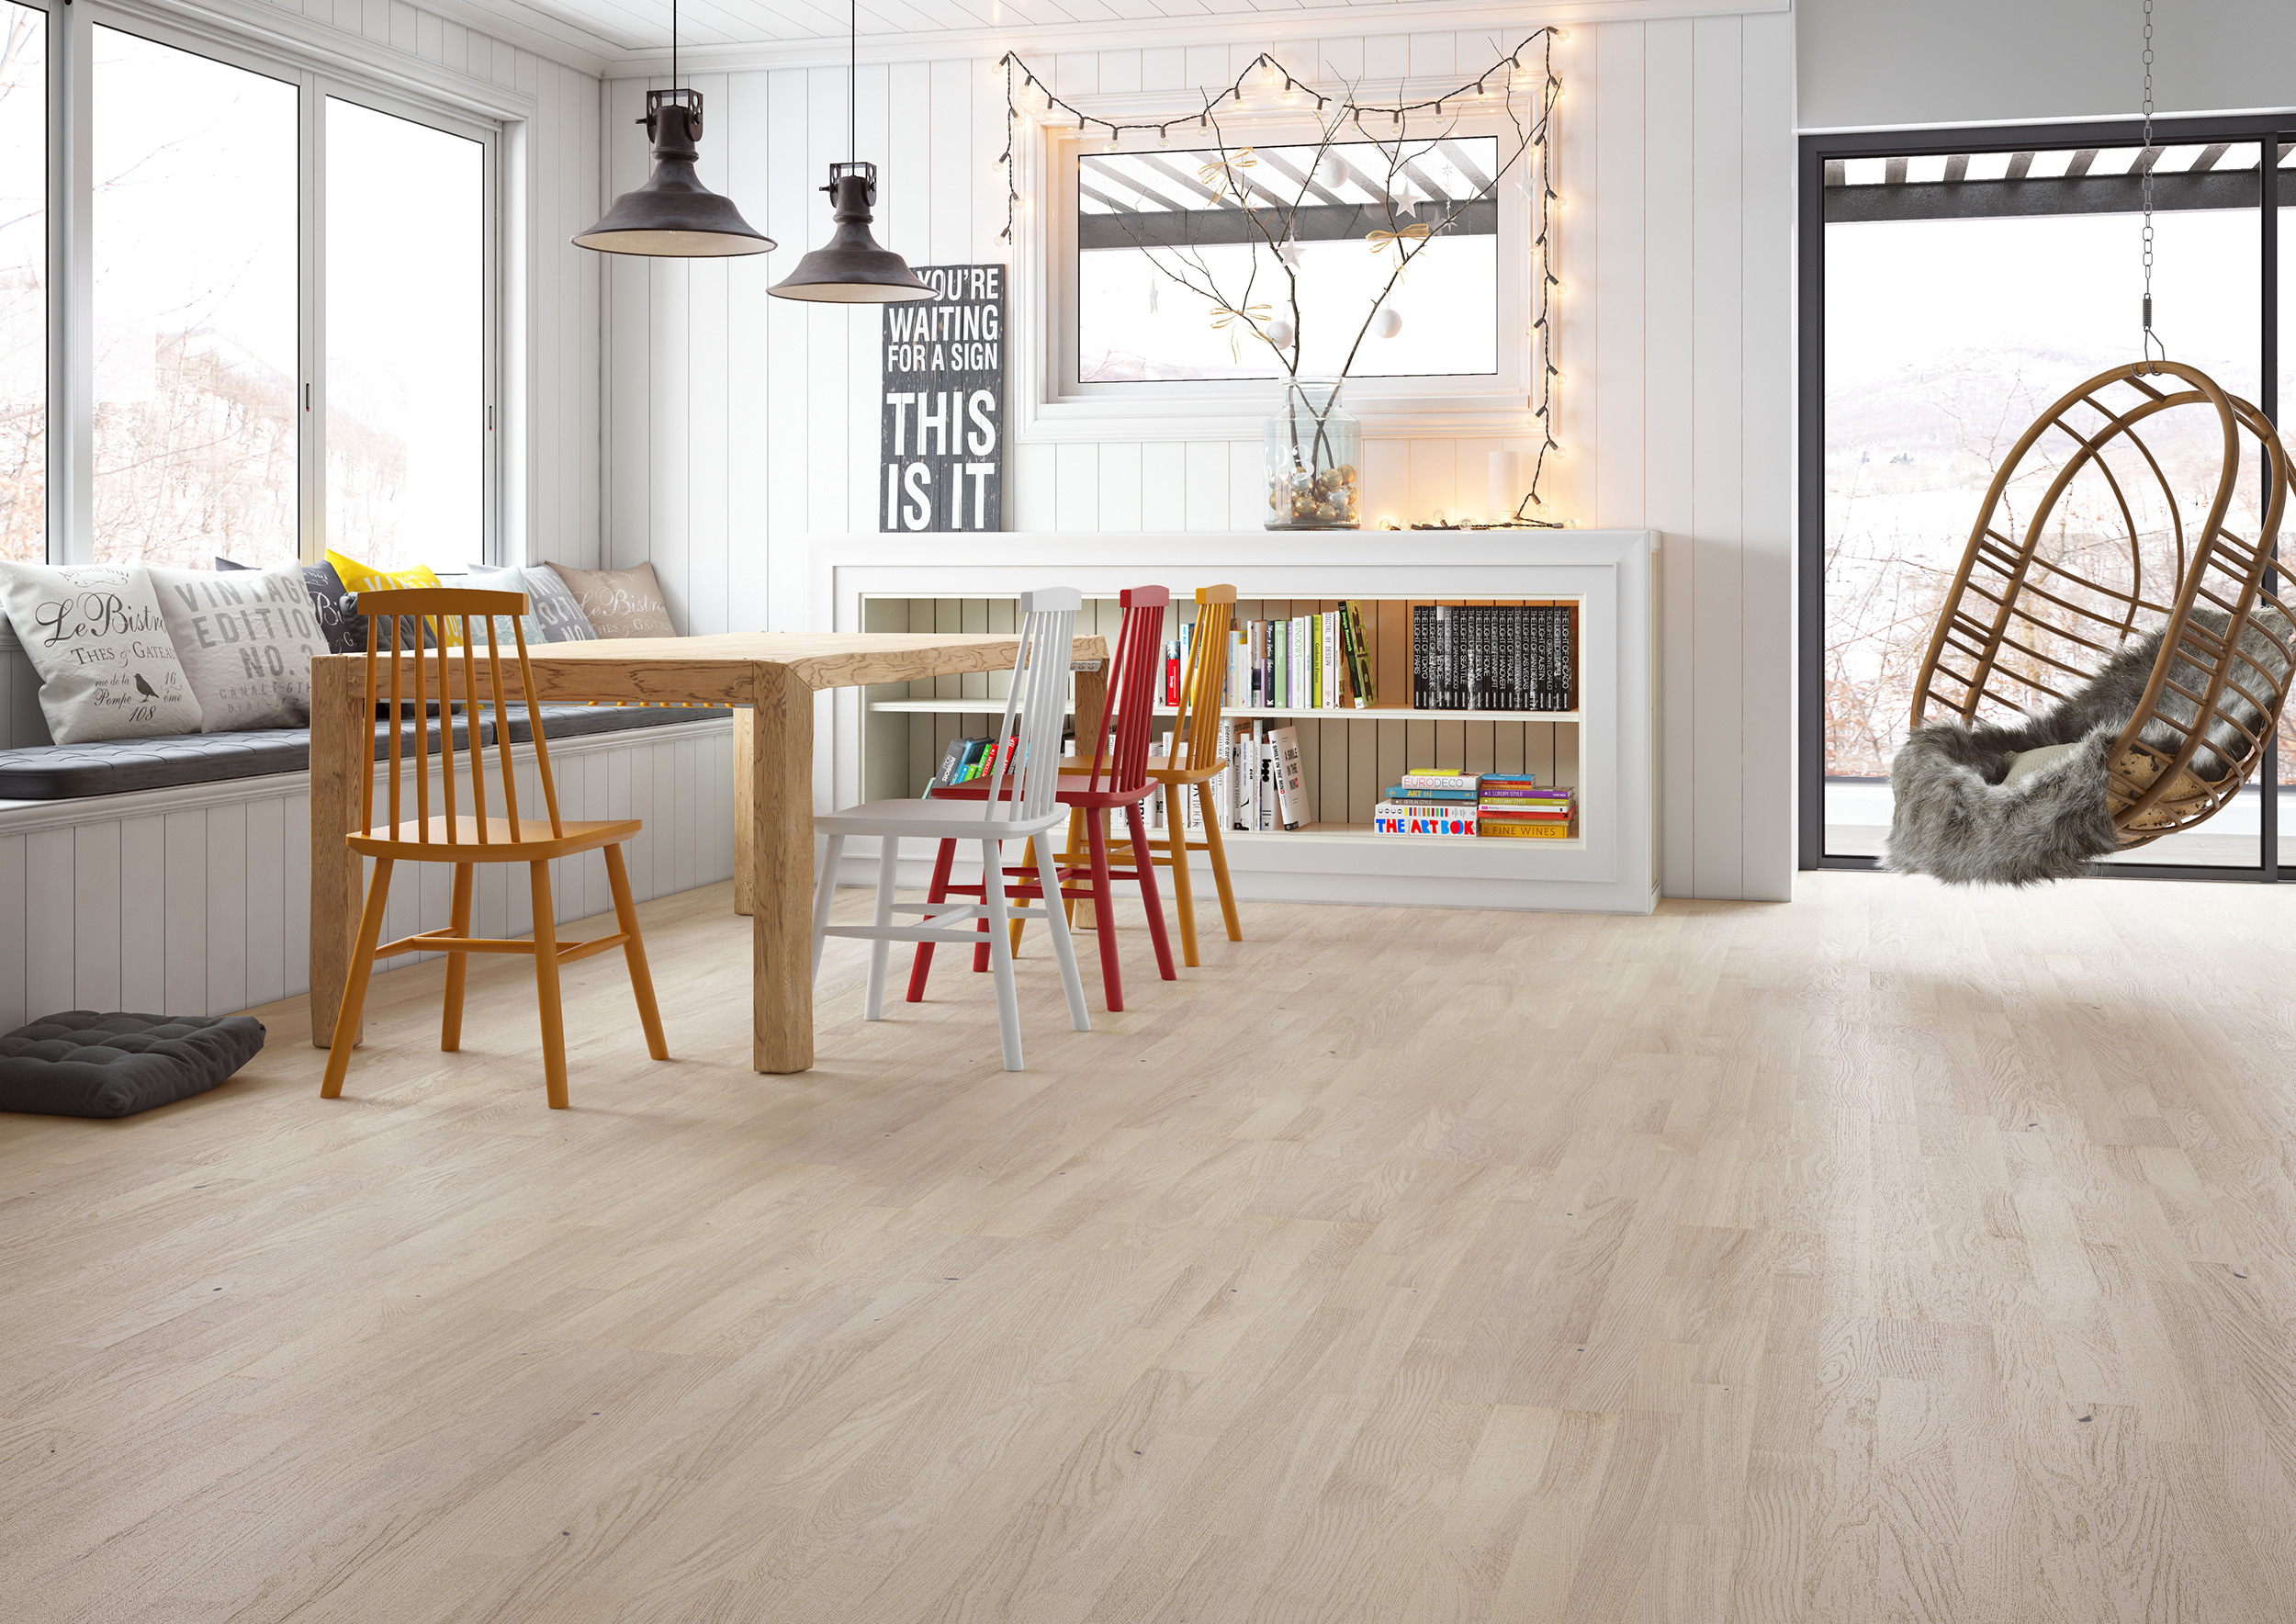 Light wood floors, light colored engineered wood flooring - Barlinek